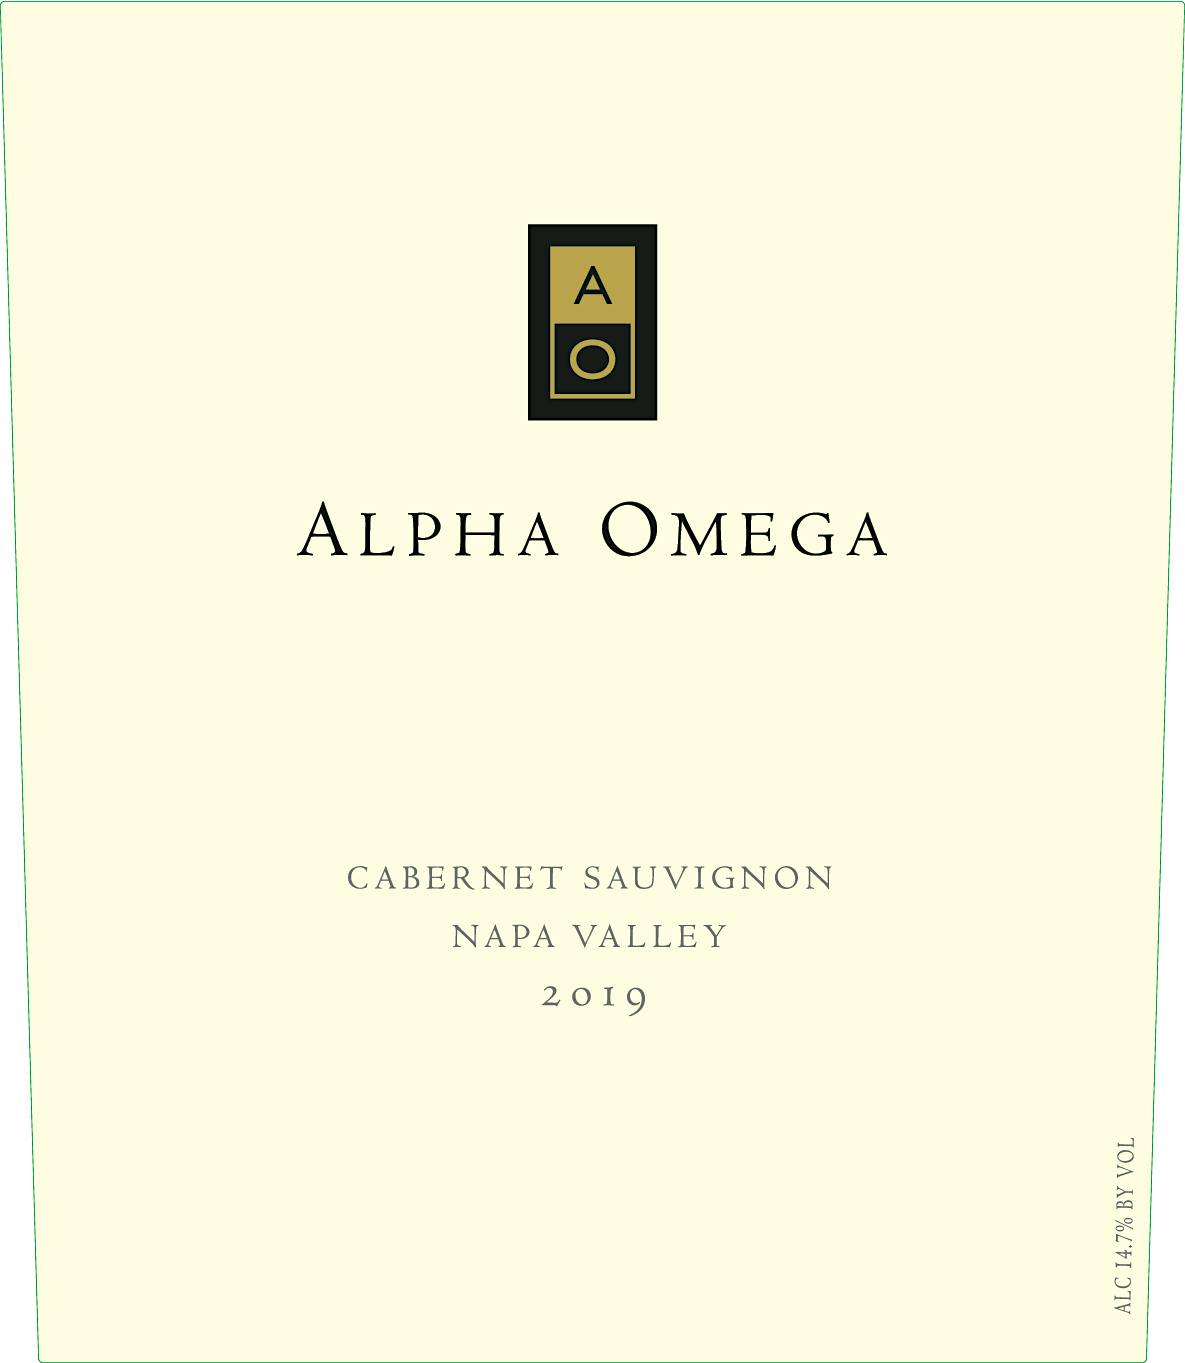 Label for Alpha Omega